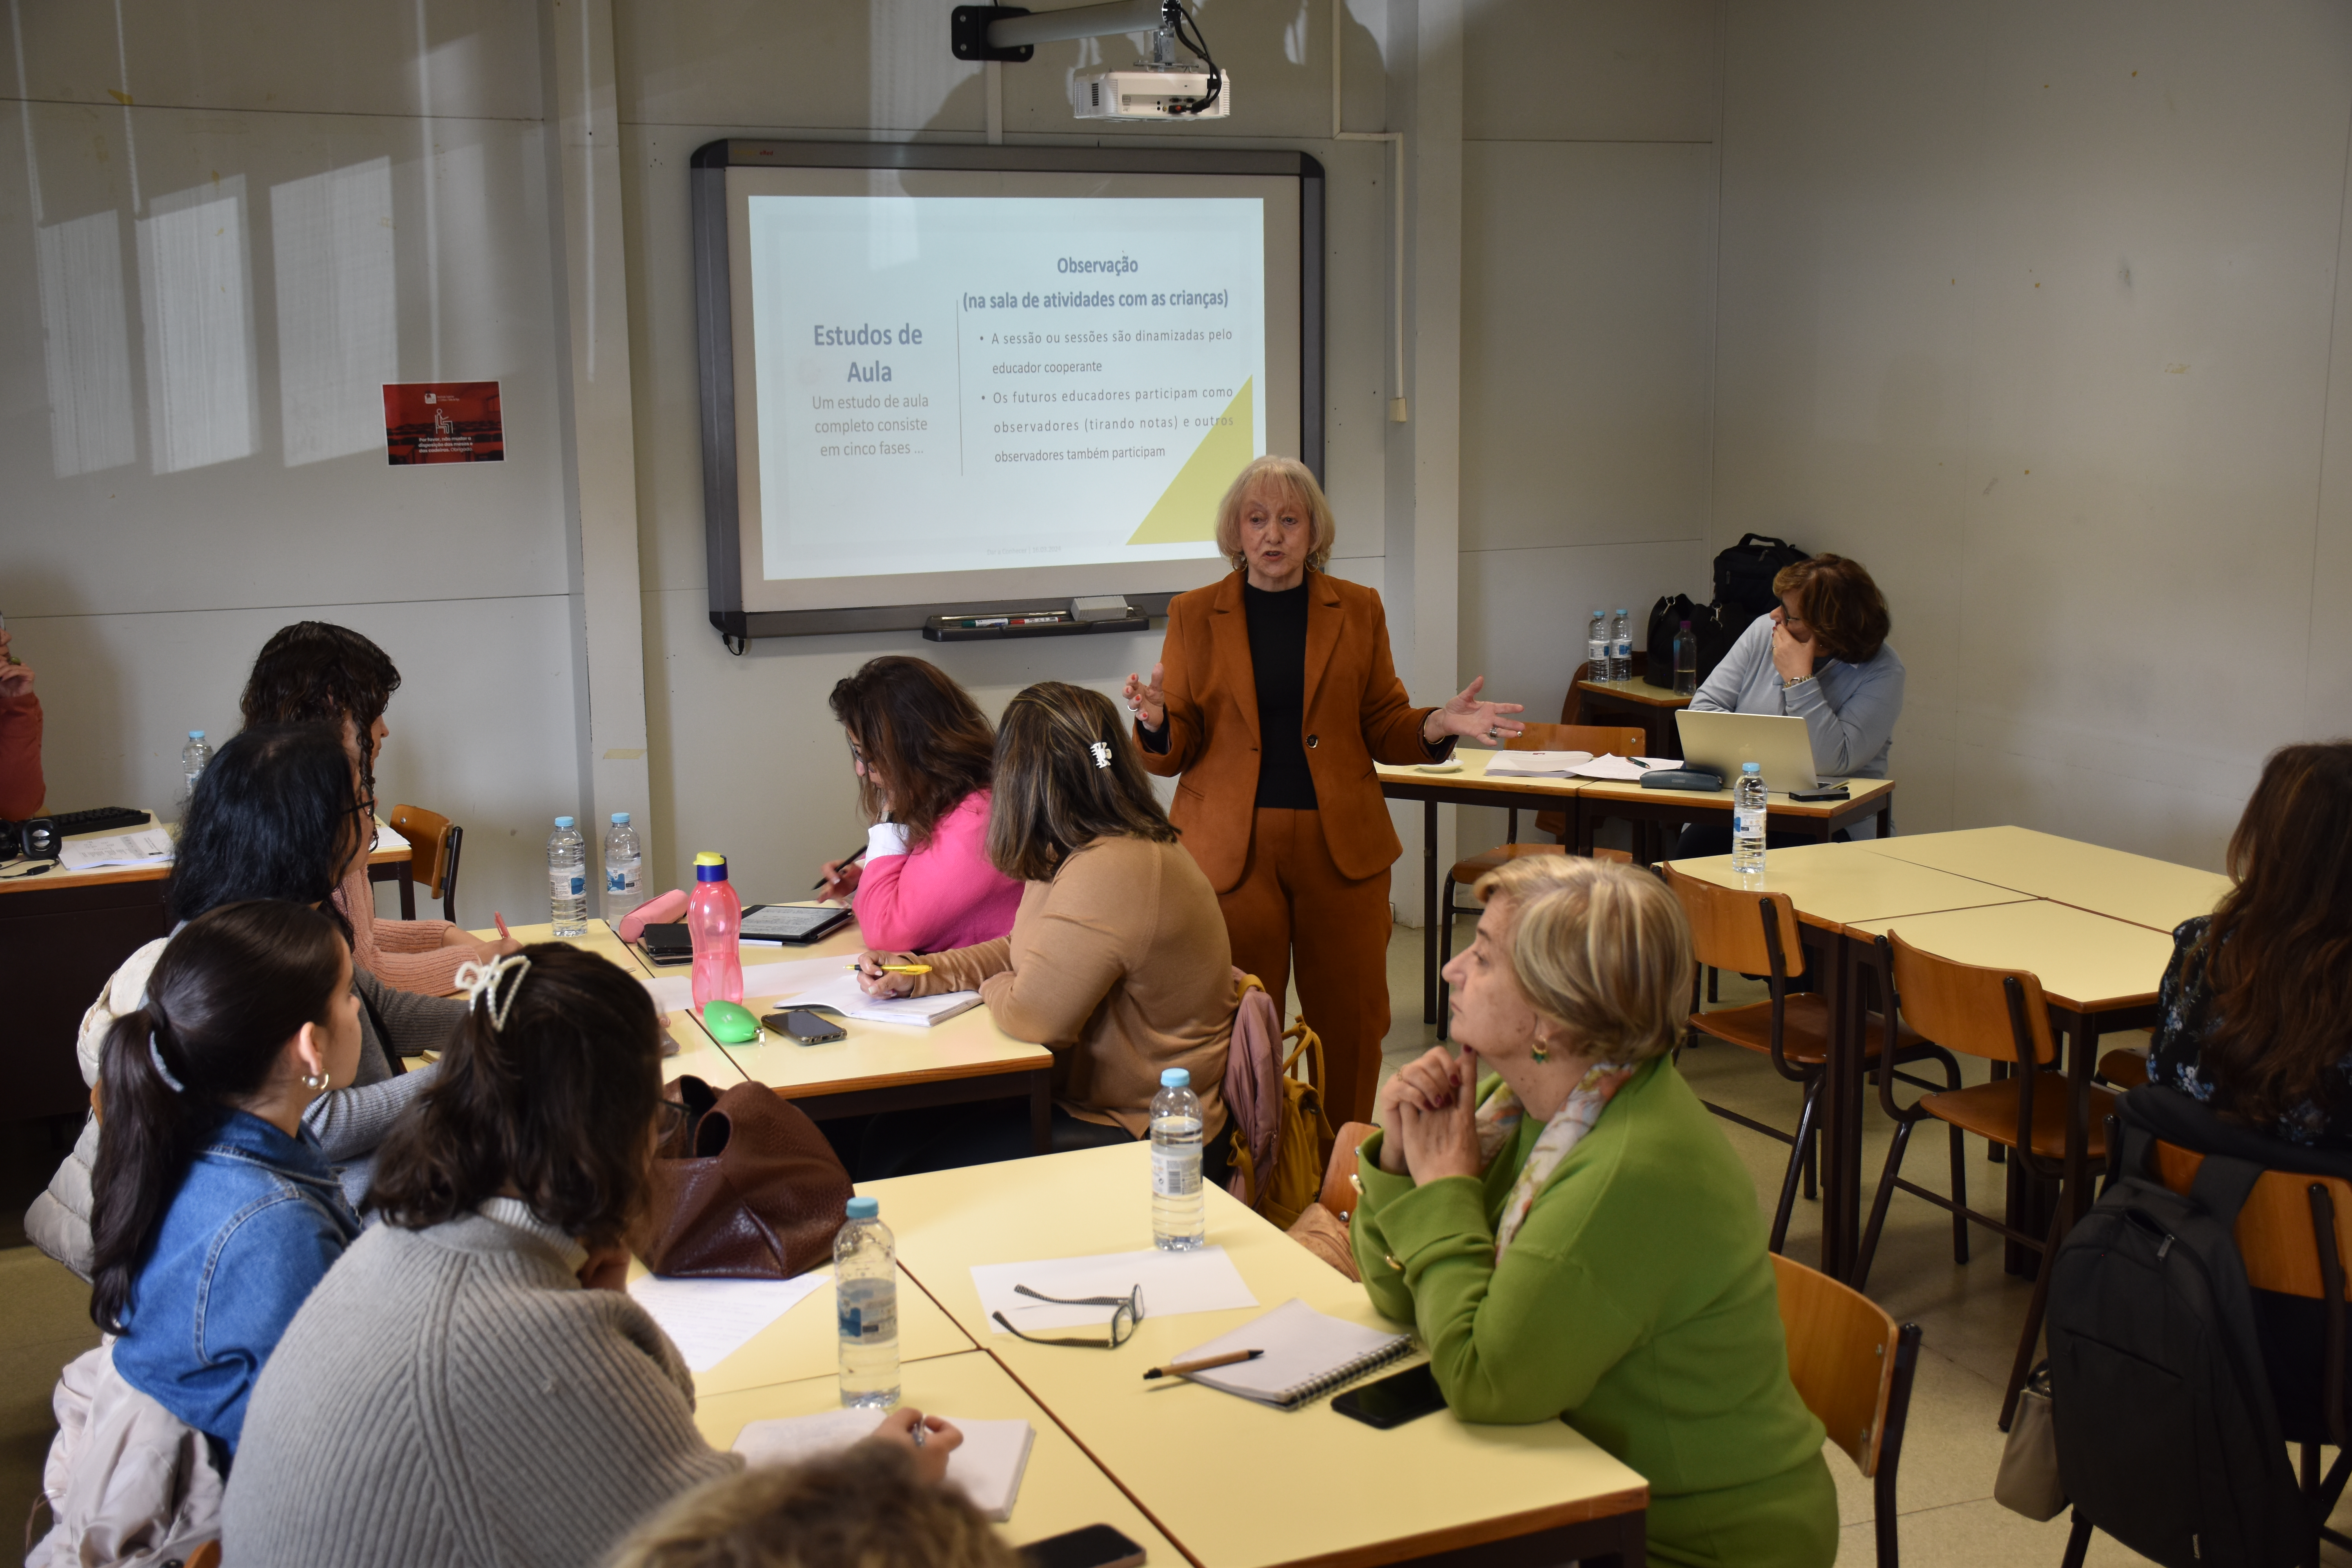 Workshop “Dar a conhecer a realização de um estudo de aula na formação inicial de Educadores de Infância”